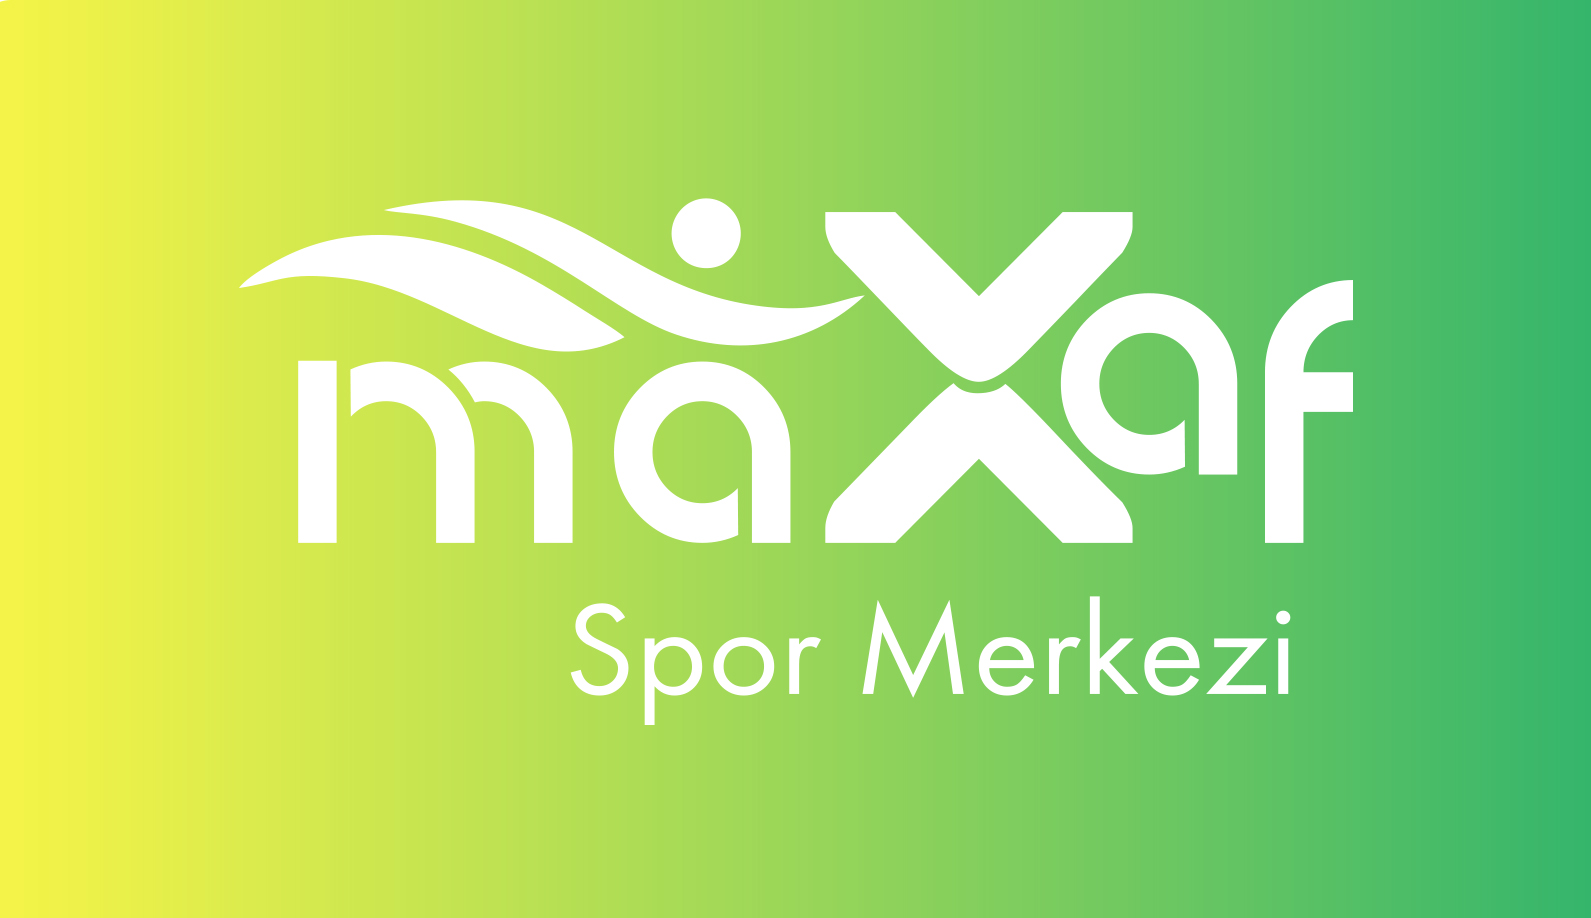 Maxaf Spor Merkezi